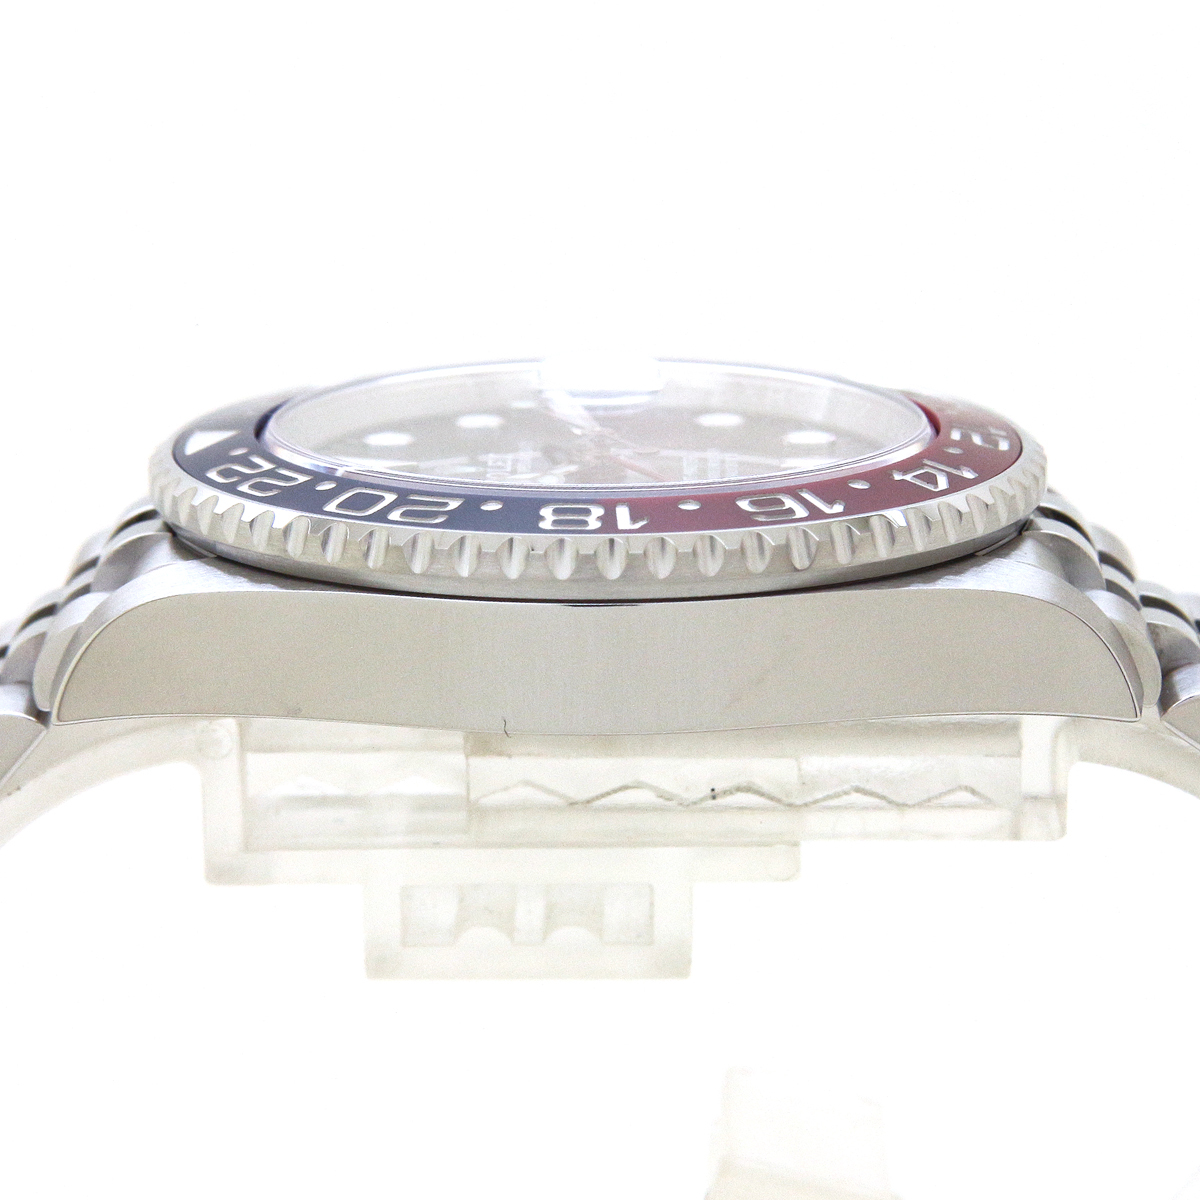 ロレックス（ROLEX）GMTマスターII 126710BLRO ペプシベゼル 2020年3月/ランダムシリアル メンズ 腕時計 未使用品_画像6